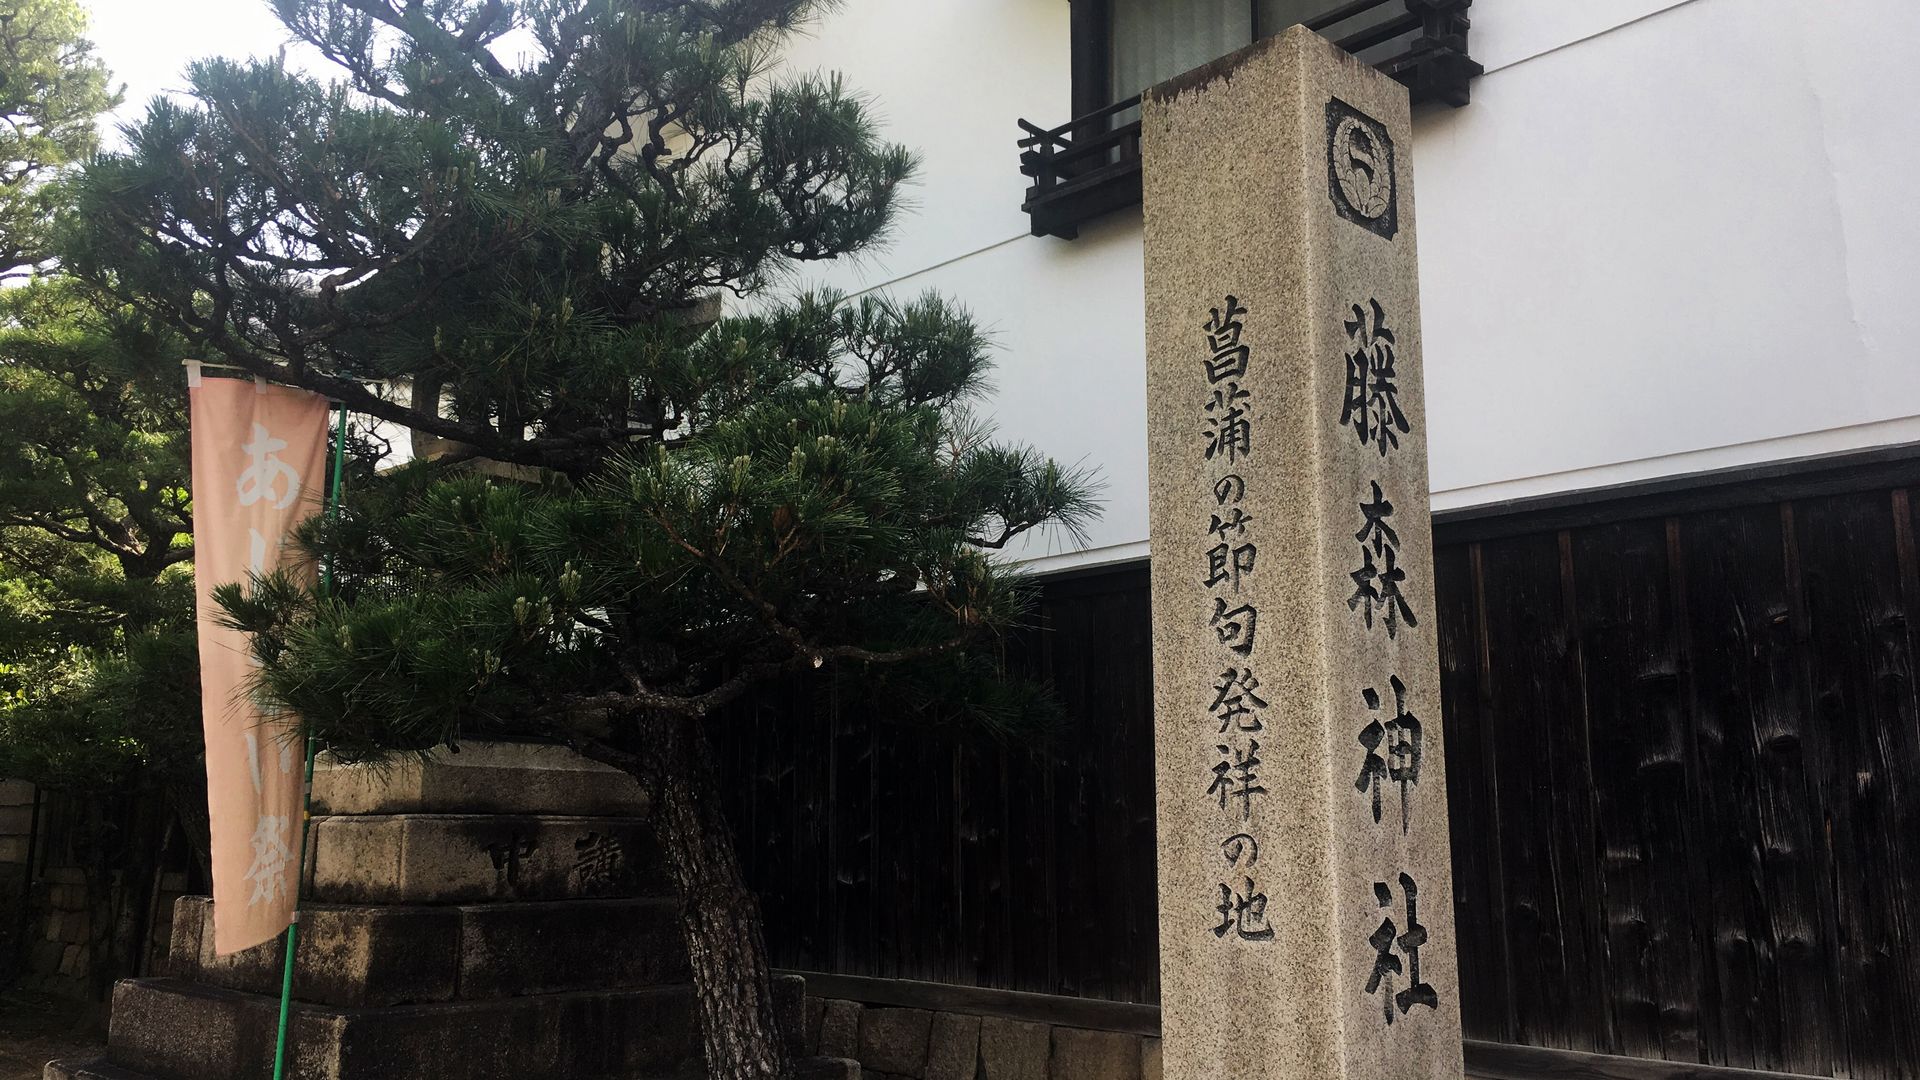 藤森神社-菖蒲の節句発祥の地を表す石碑